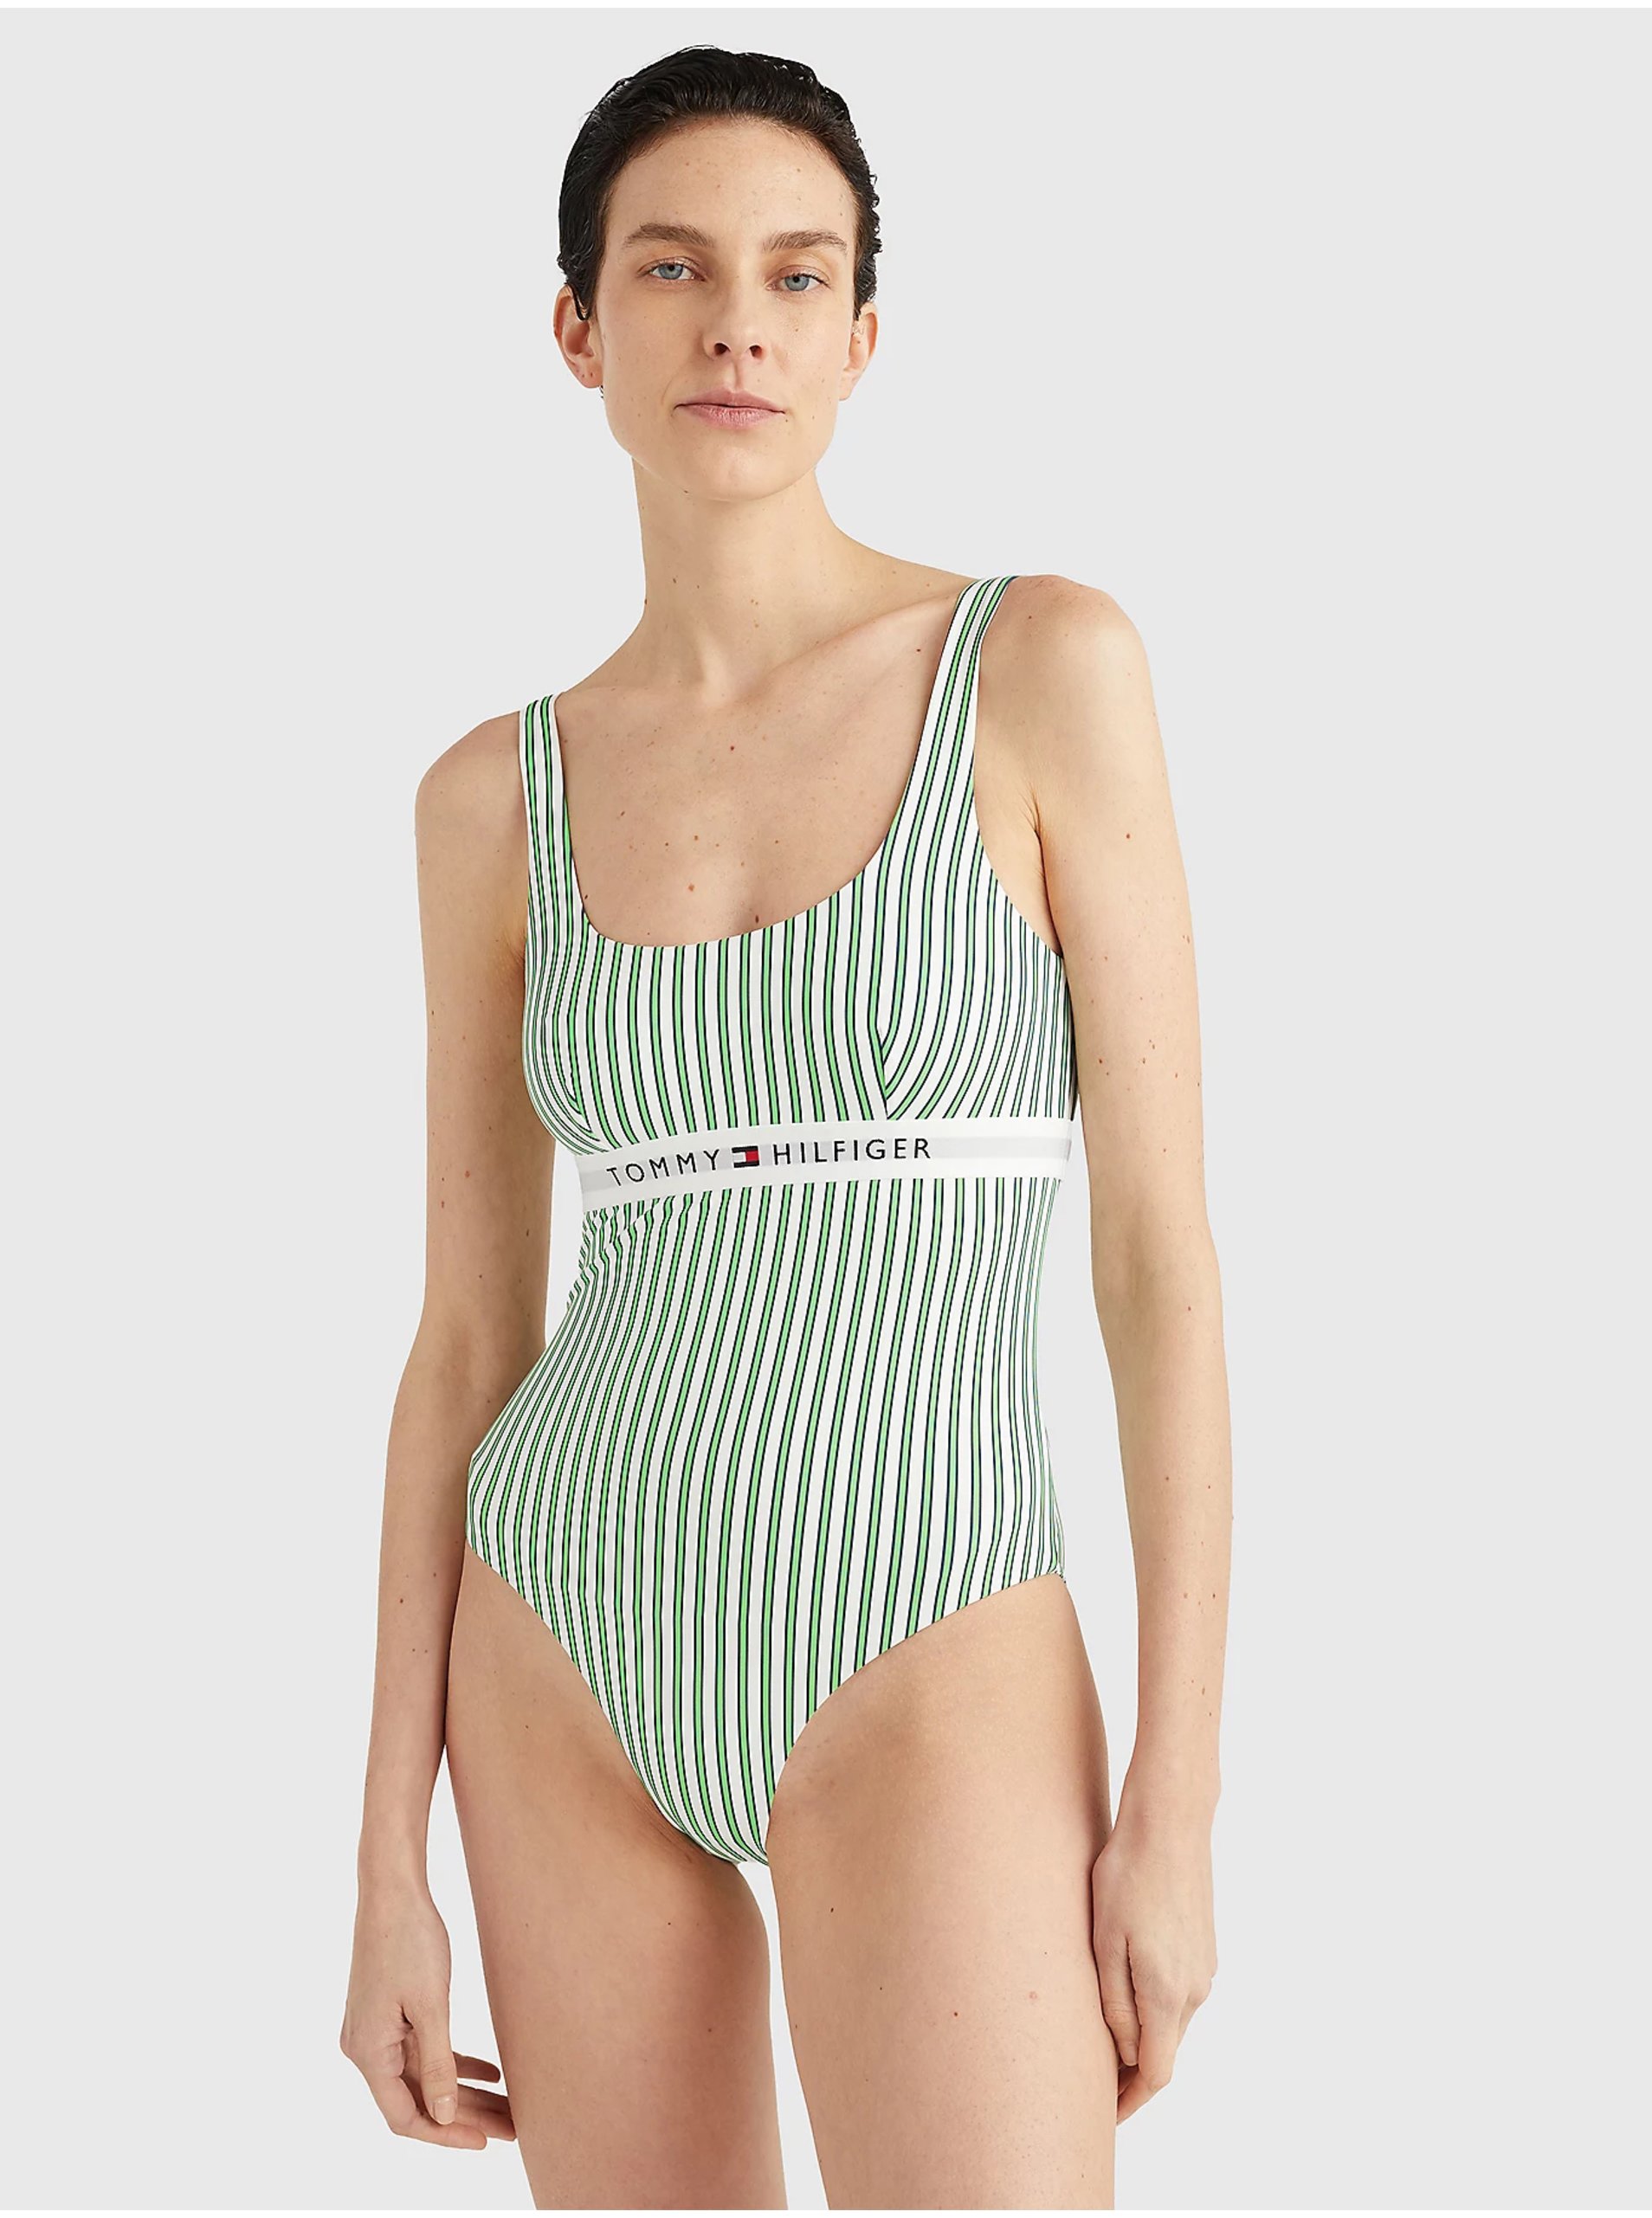 Lacno Zelené dámske pruhované jednodielne plavky Tommy Hilfiger Underwear